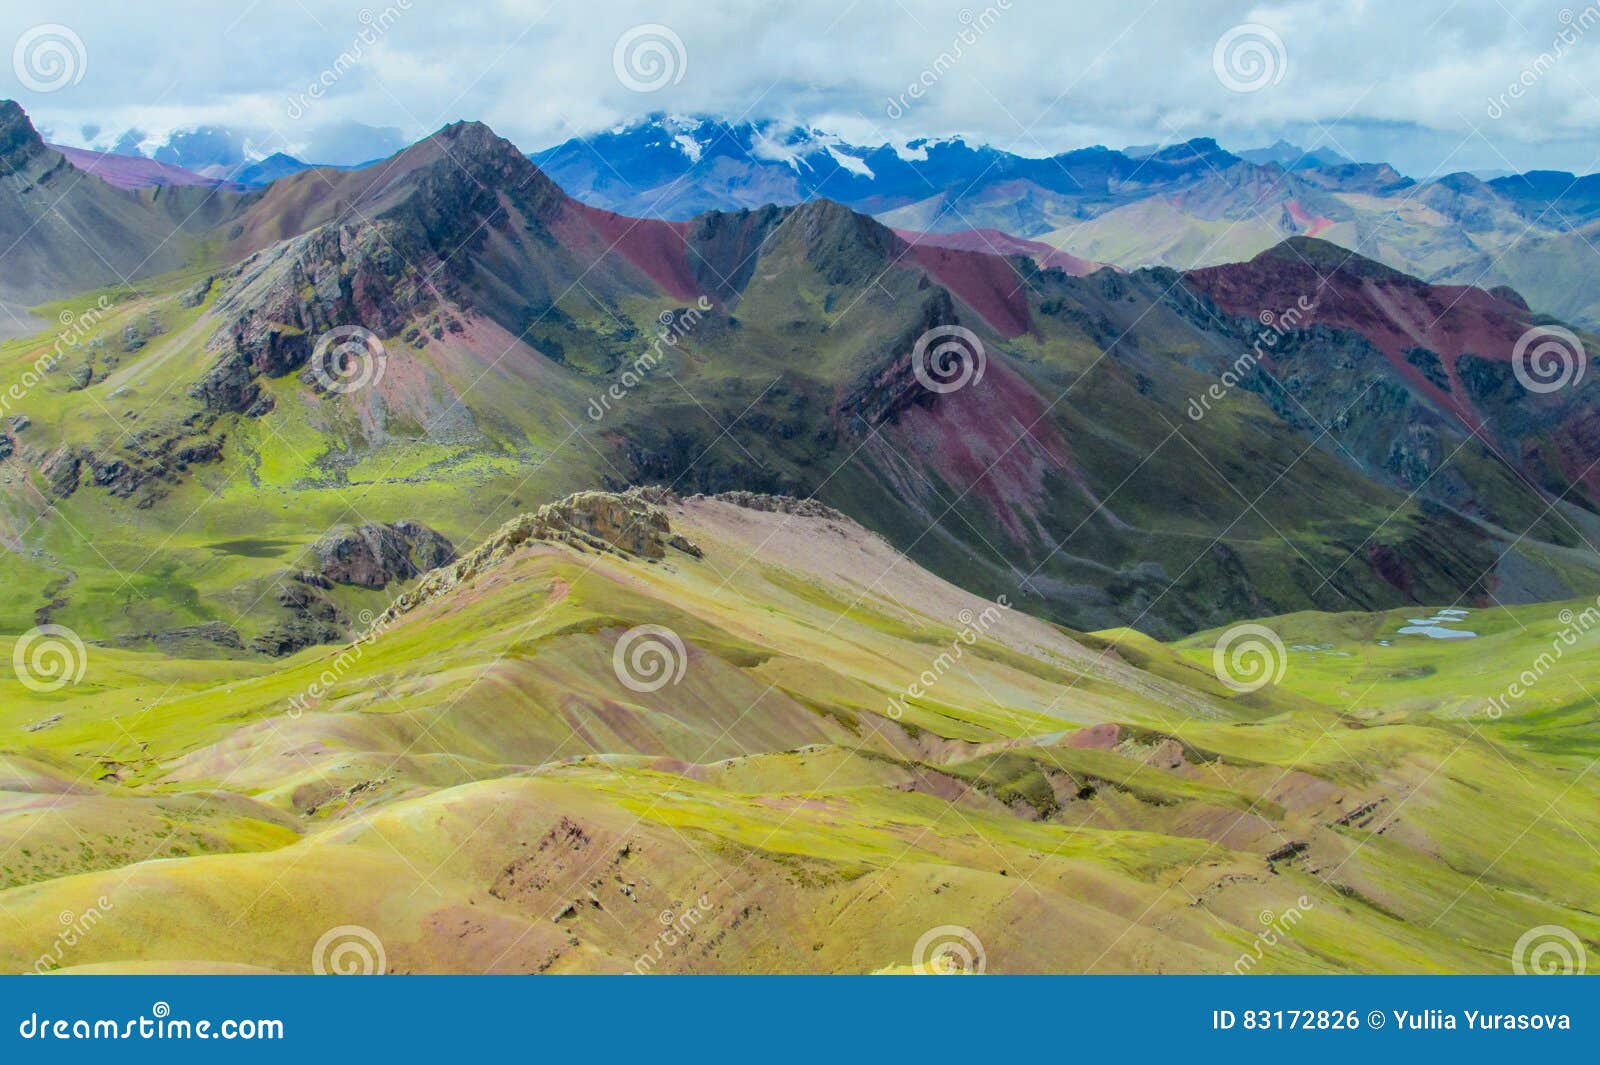 mountain of siete colores near cuzco